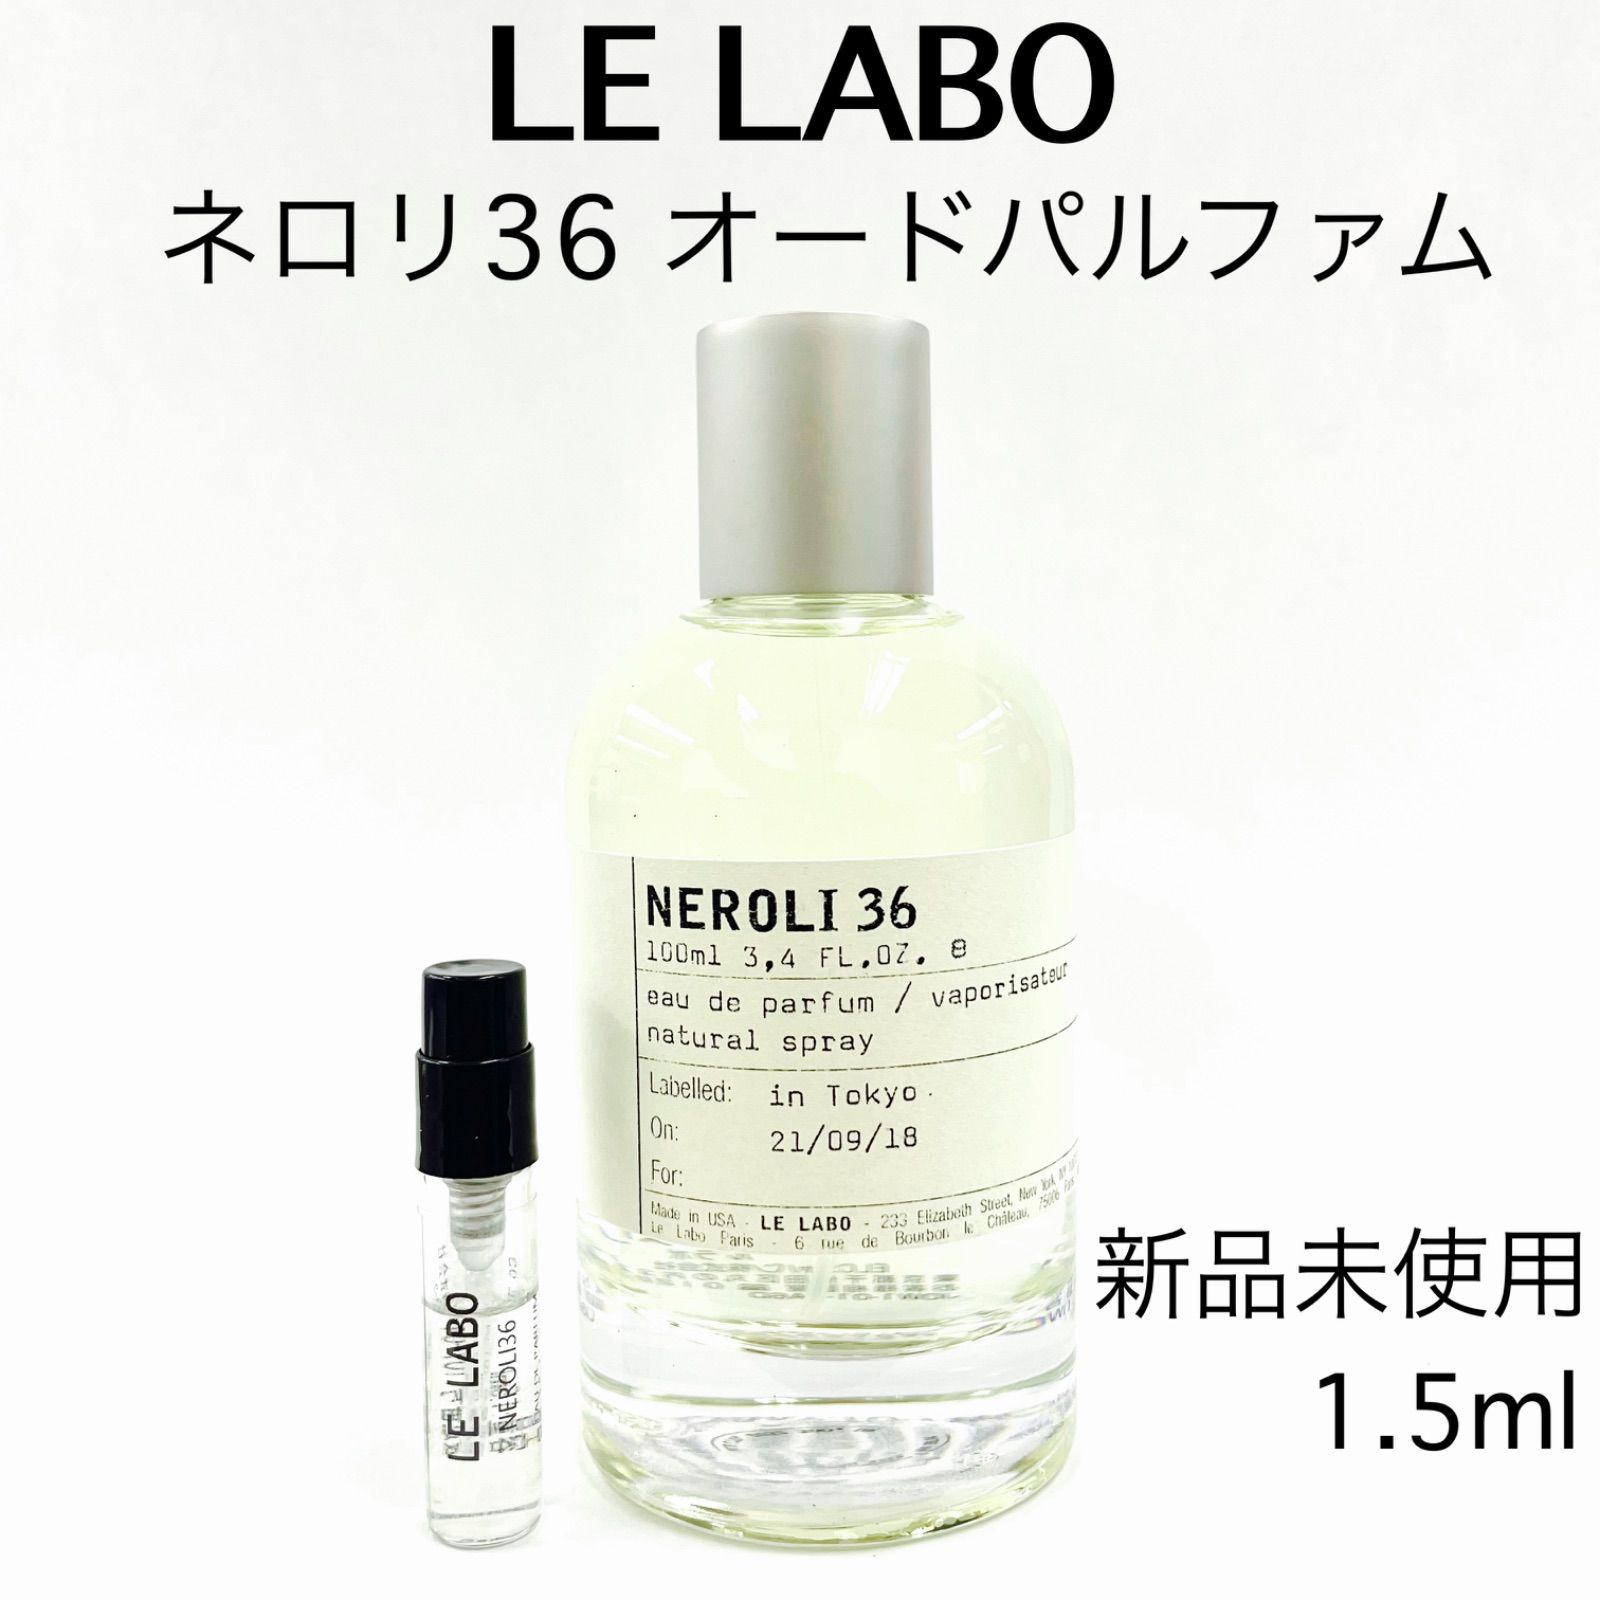 LELABO ネロリ 36 - 香水(ユニセックス)